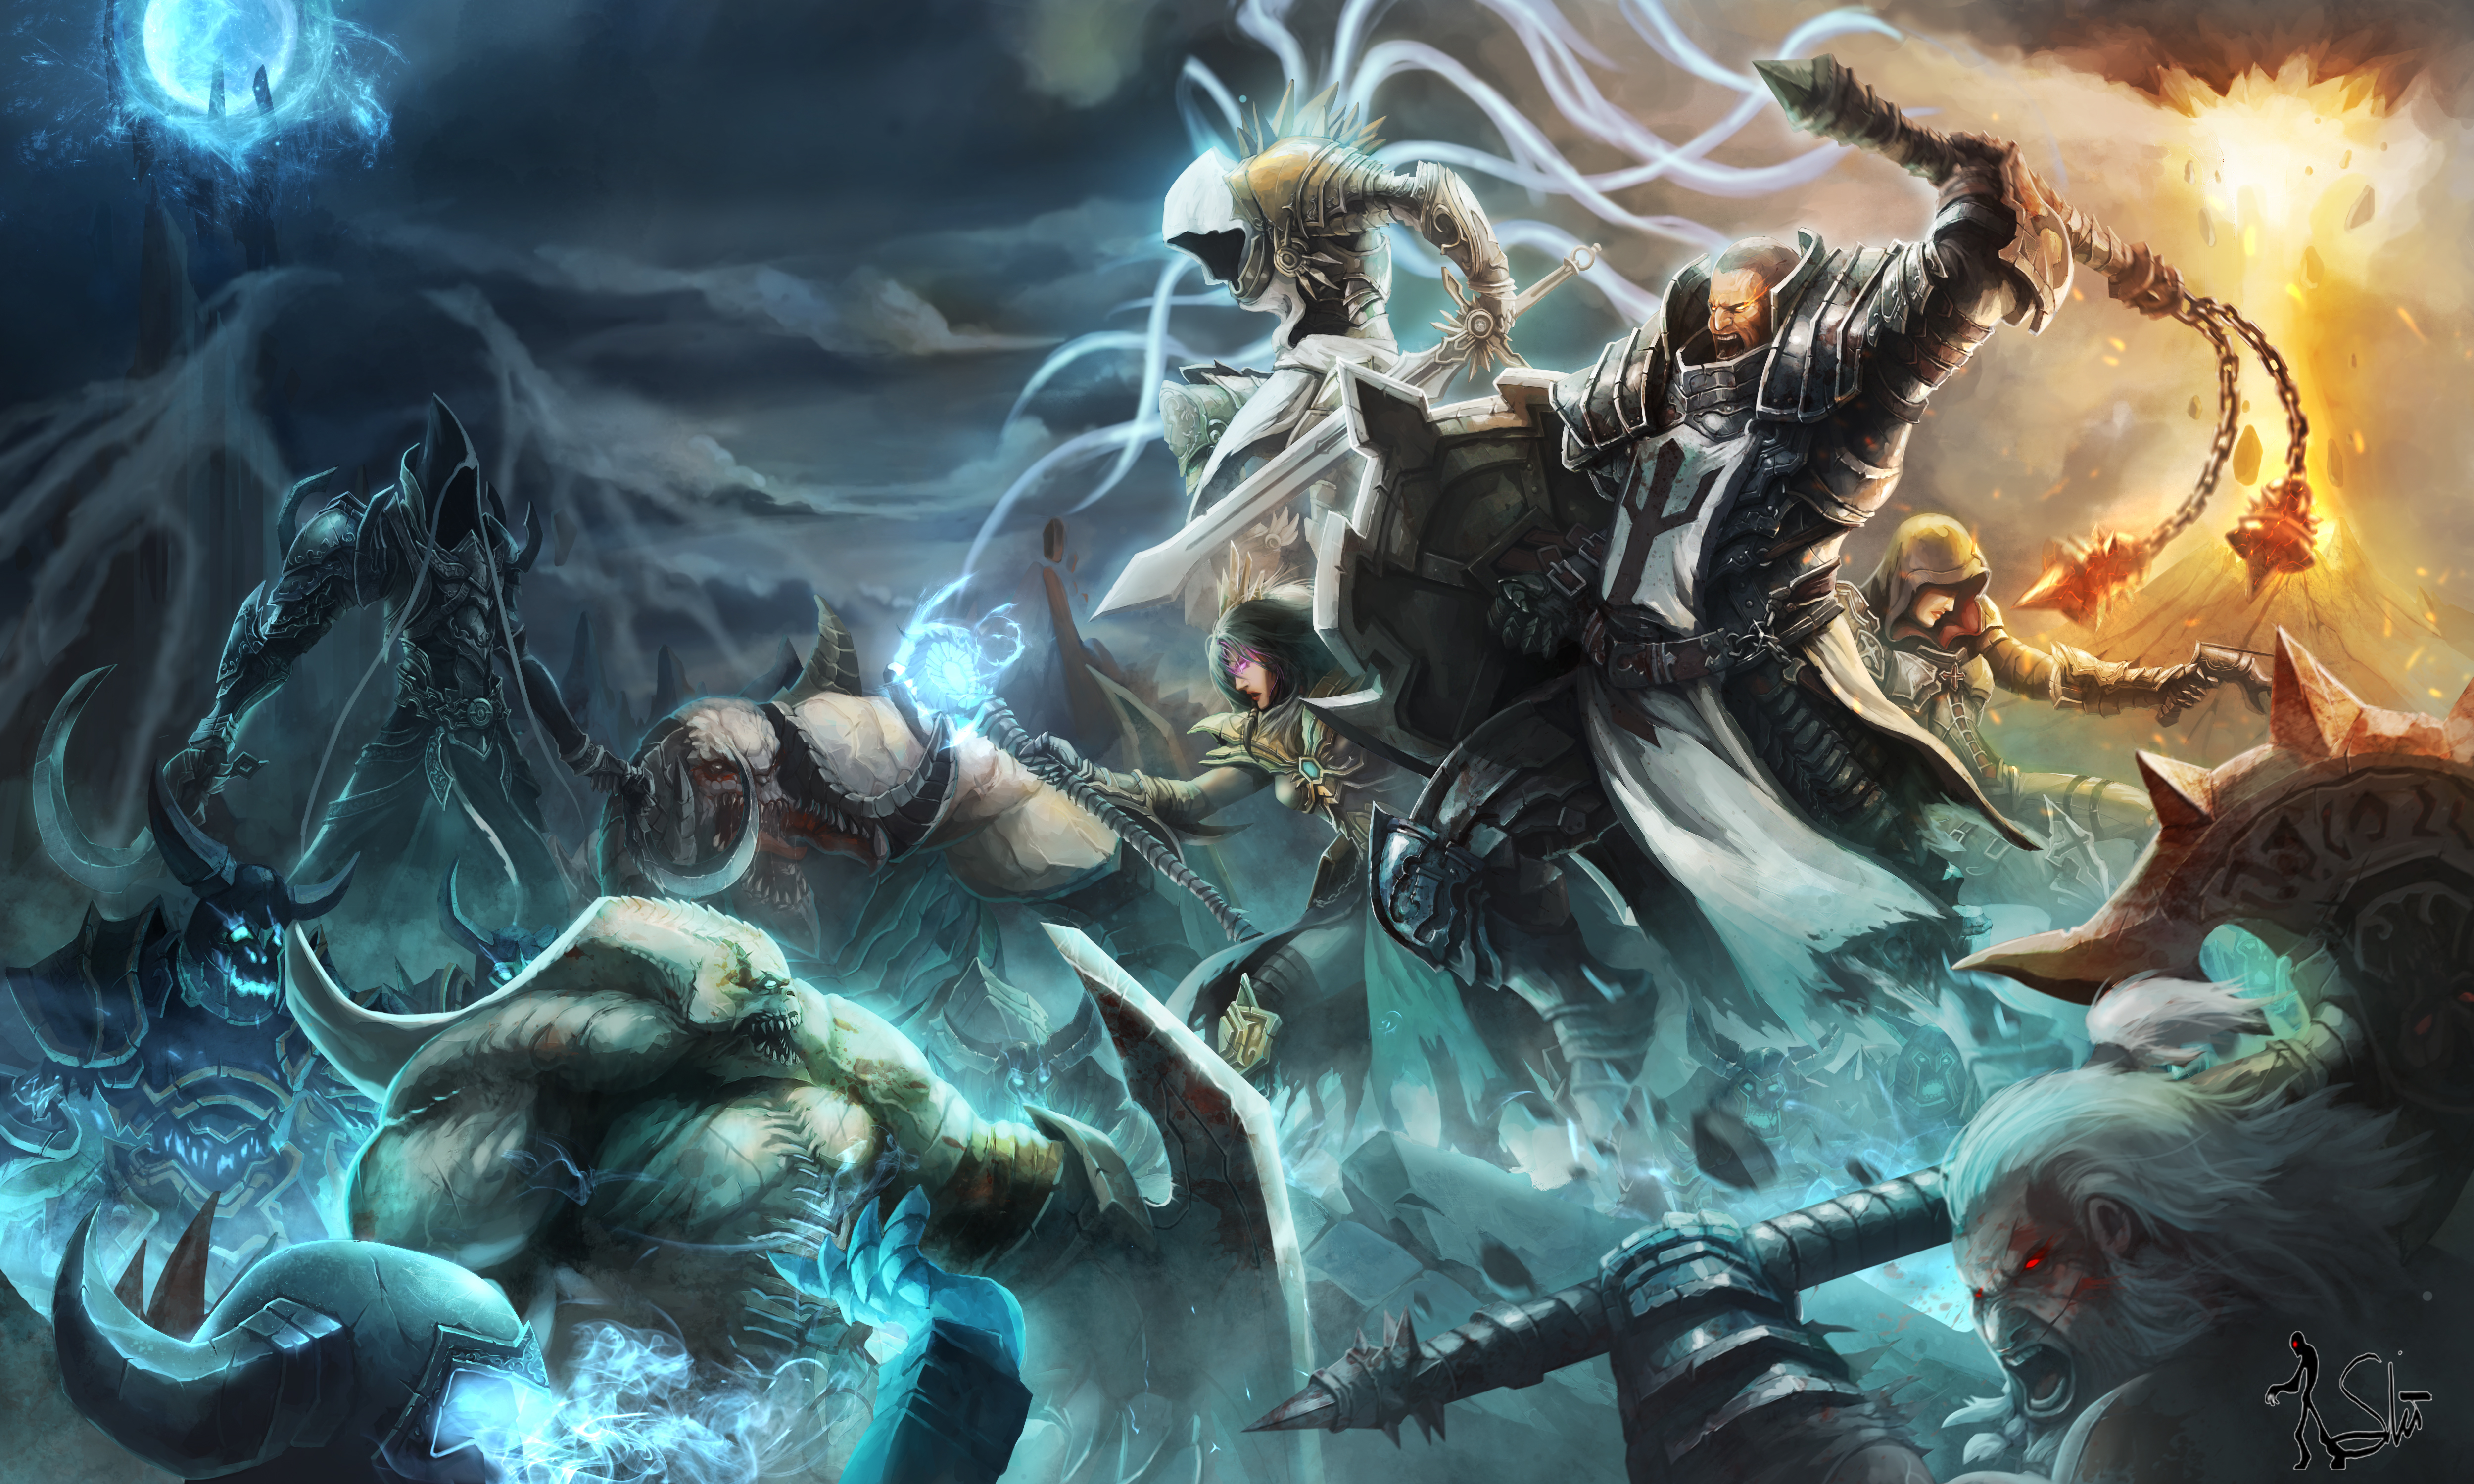 Diablo III: Reaper Of Souls Wallpapers, Pictures, Images